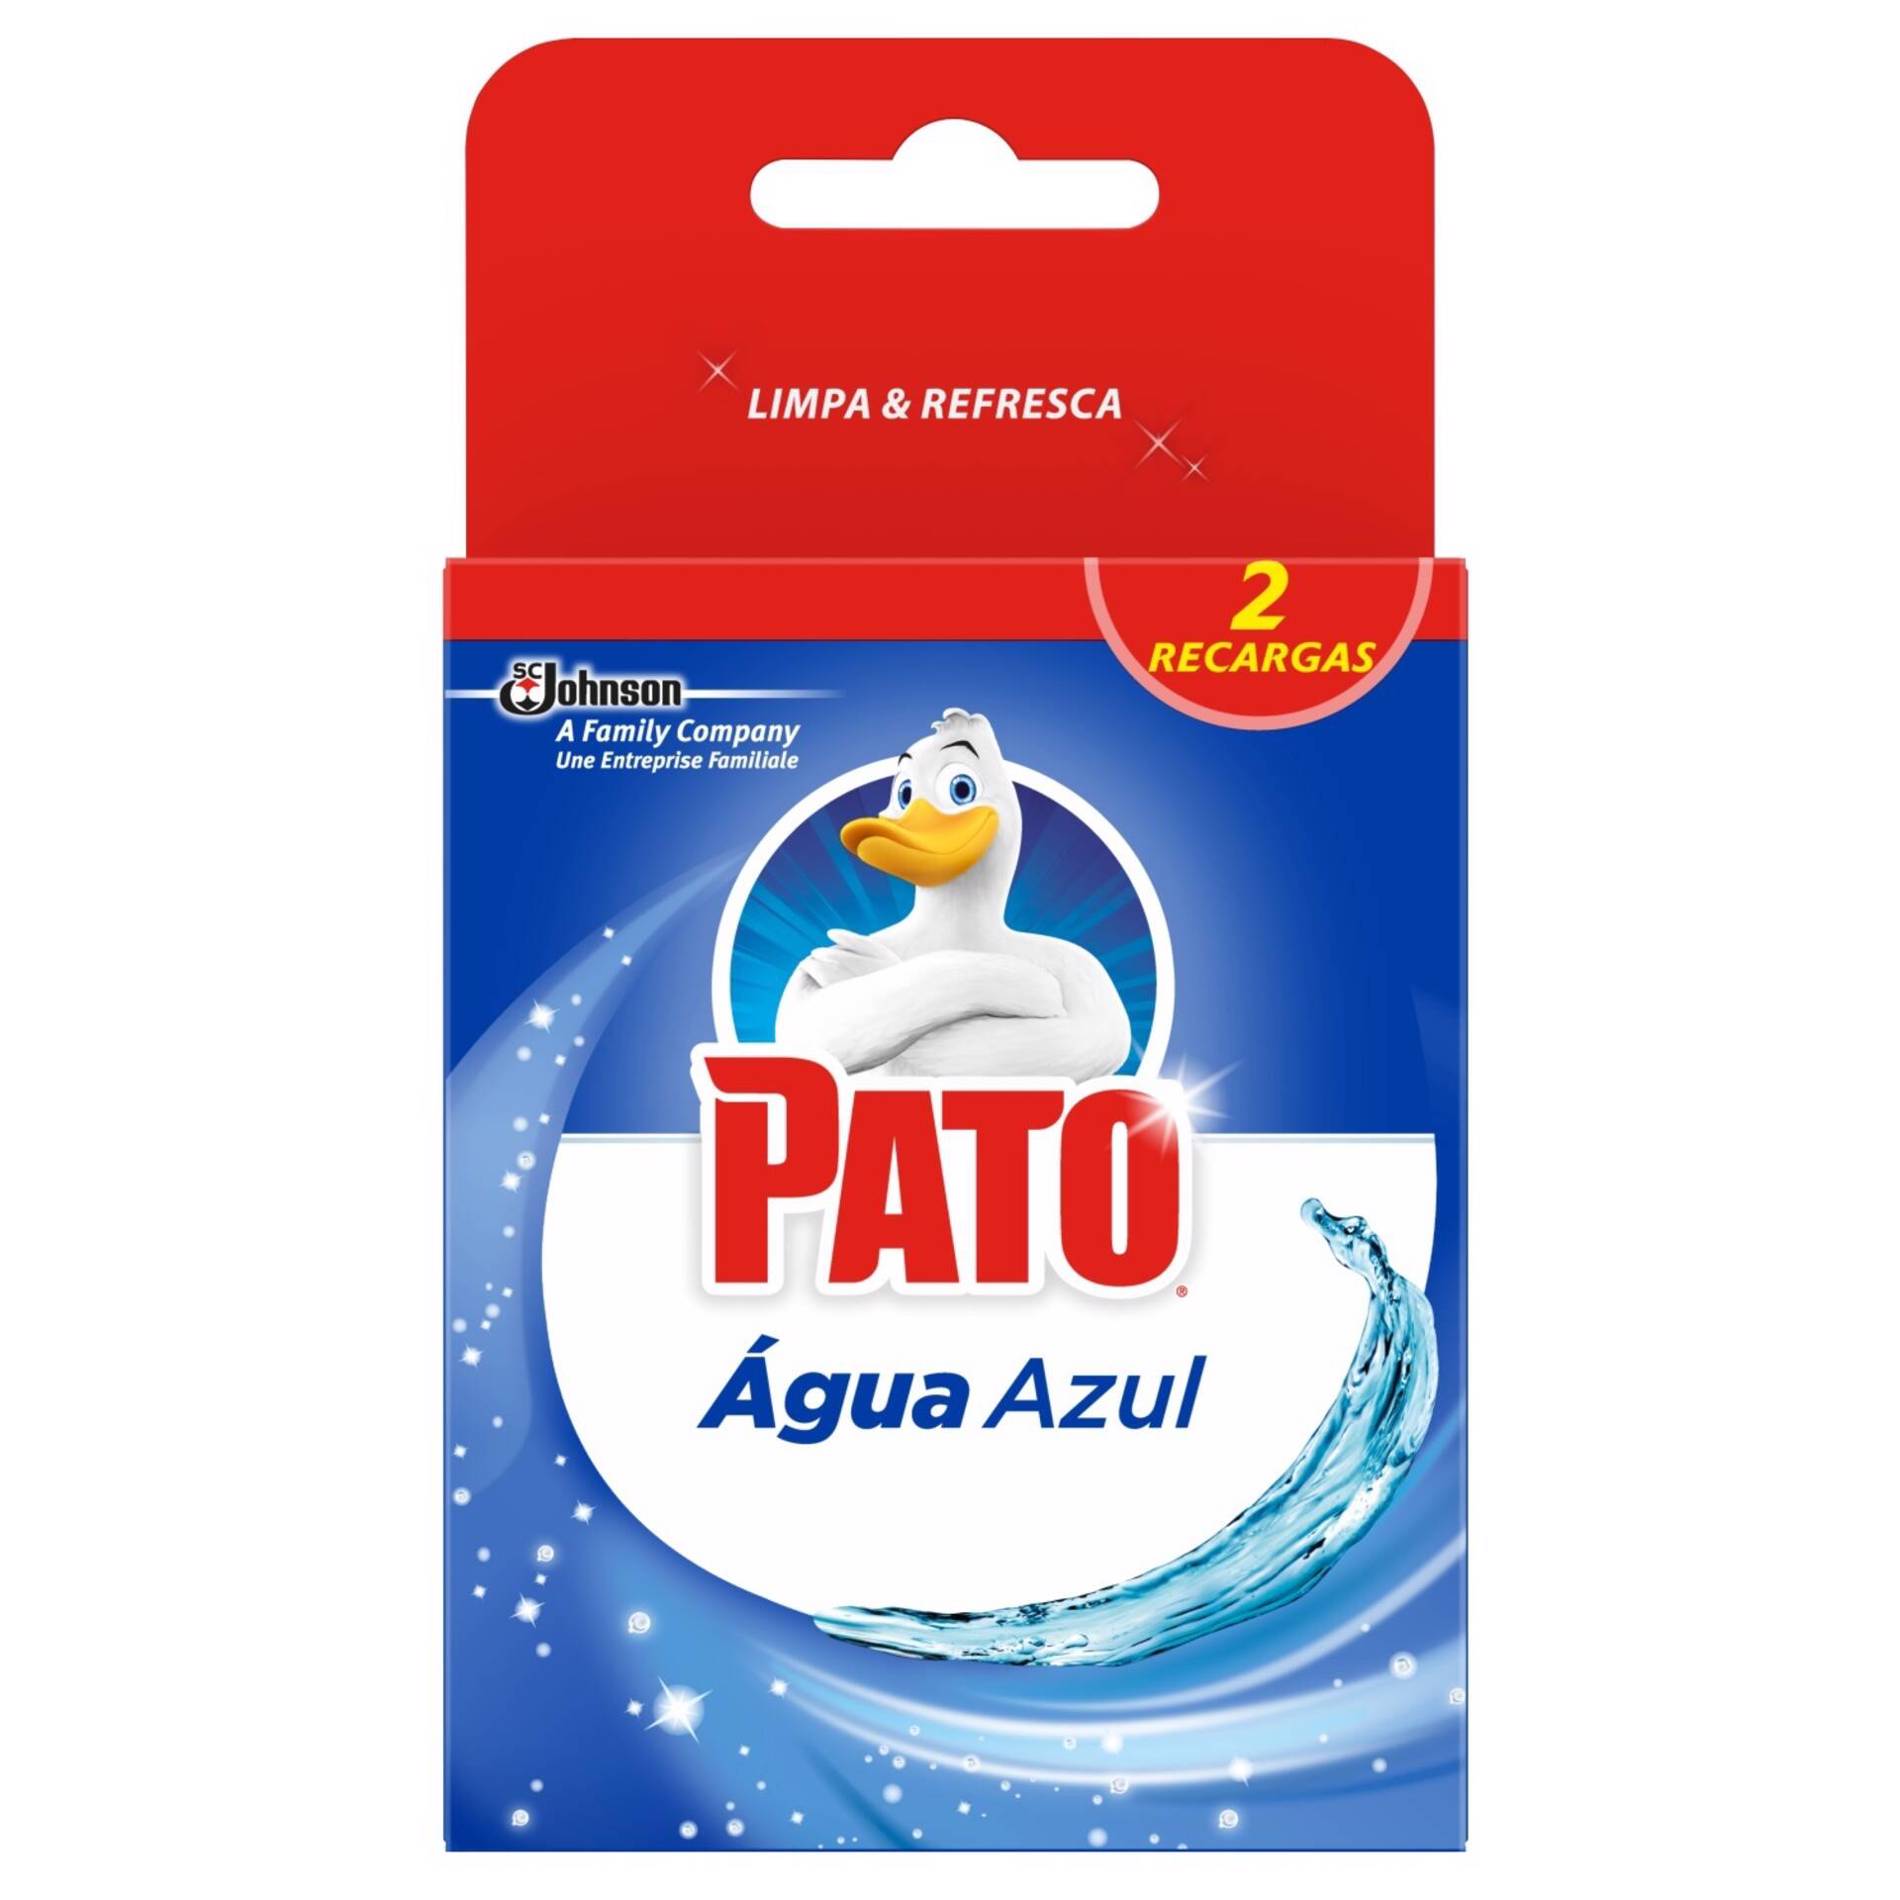 Hogar Pato unisex PATO WC MATIC agua azul desodorizante 2 x 50 gr